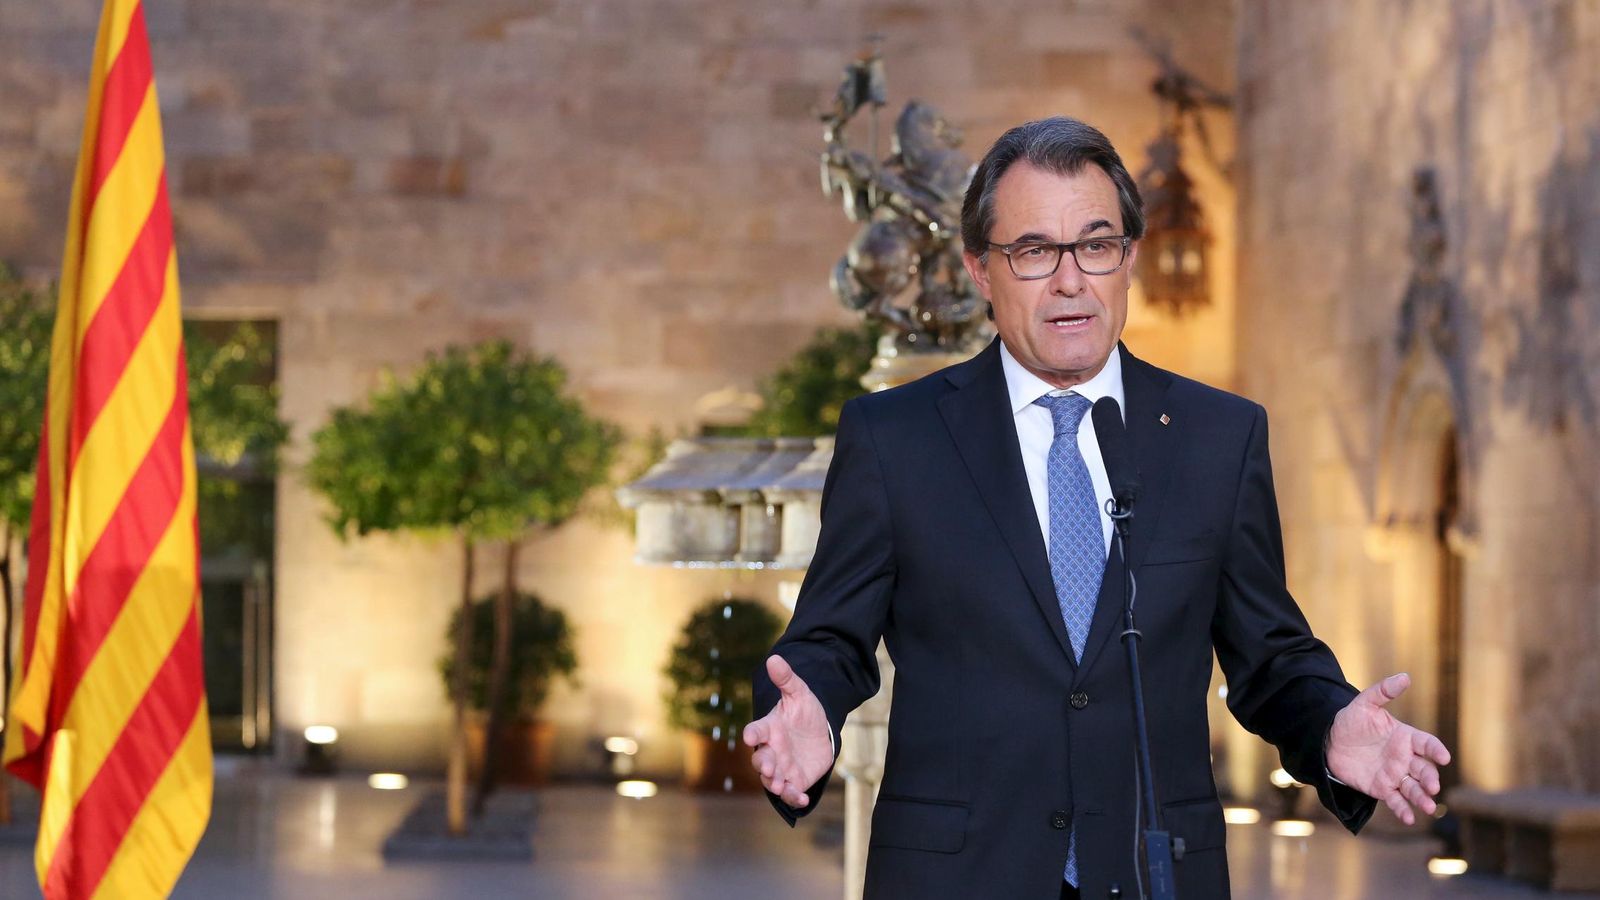 Foto: El presidente de la Generalitat, Artur Mas. (Reuters)